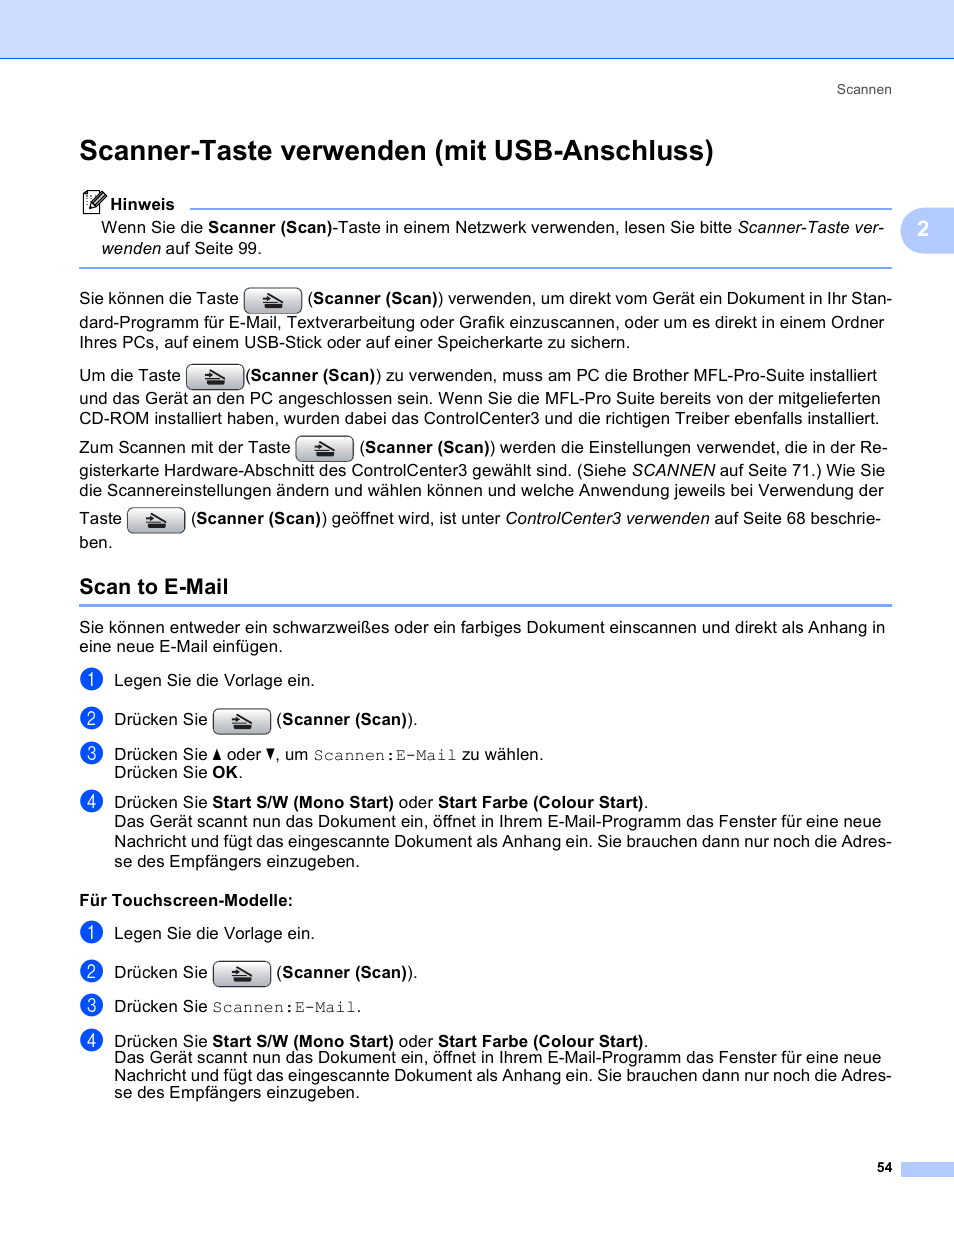 Scanner-taste verwenden (mit usb-anschluss), Scan to e-mail | Brother MFC-6490CW Benutzerhandbuch | Seite 63 / 251